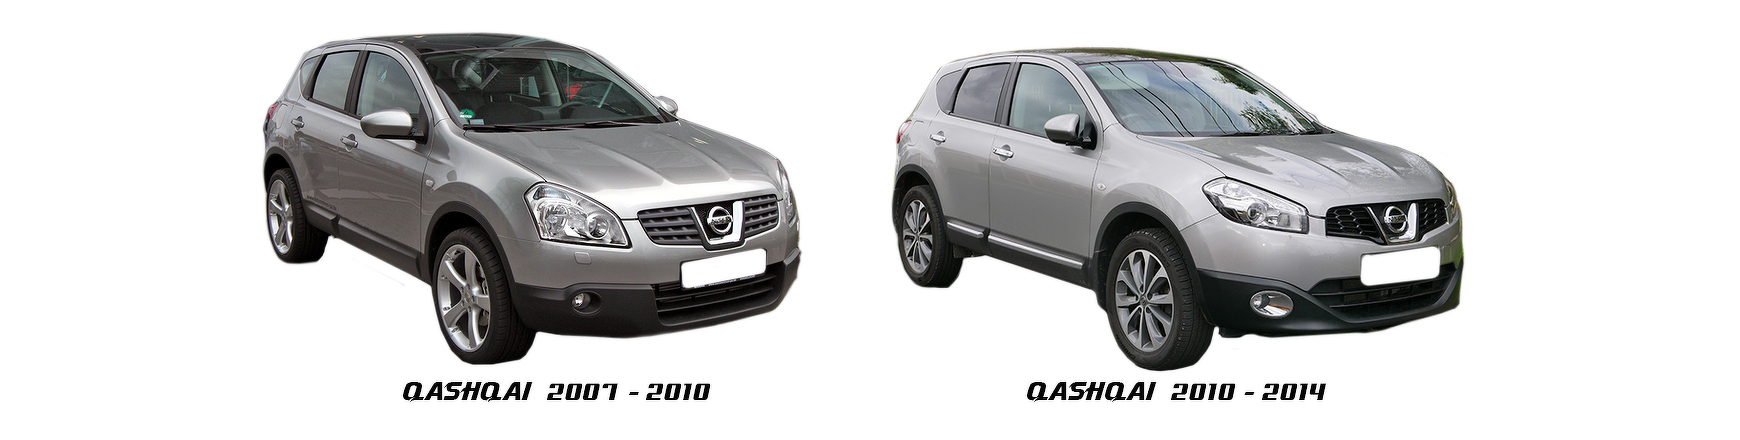 Recambios de Nissan Qashqai de 2007, 2008, 2009 y 2010